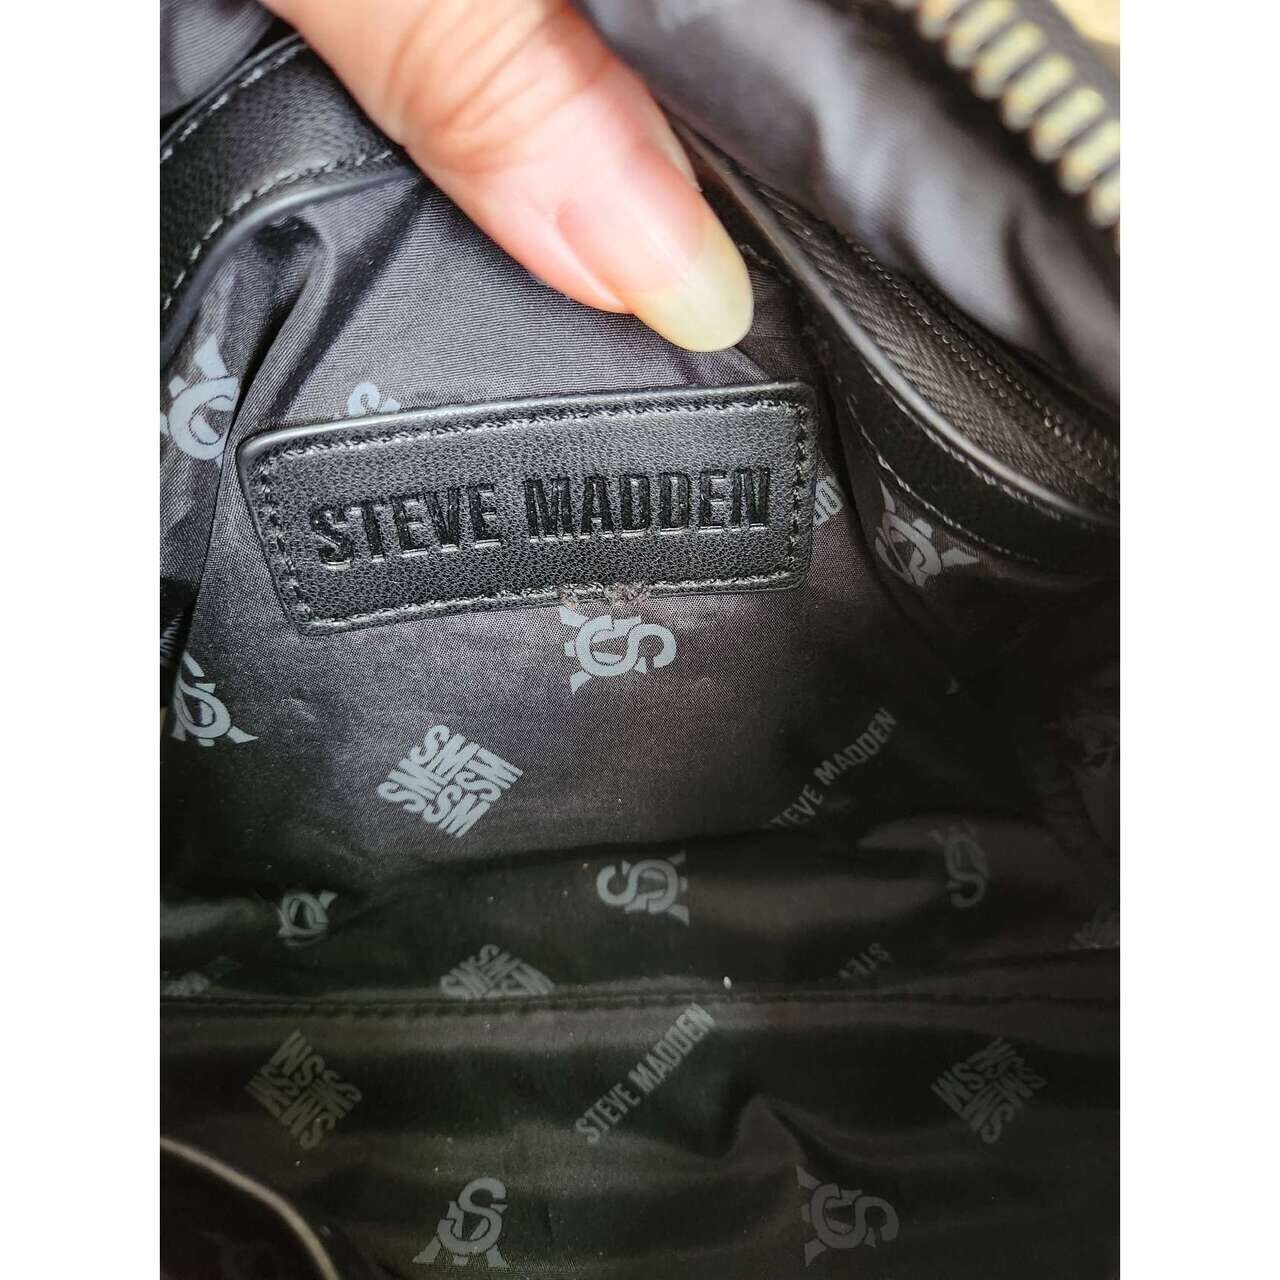 Steve Madden Black Sling Bag